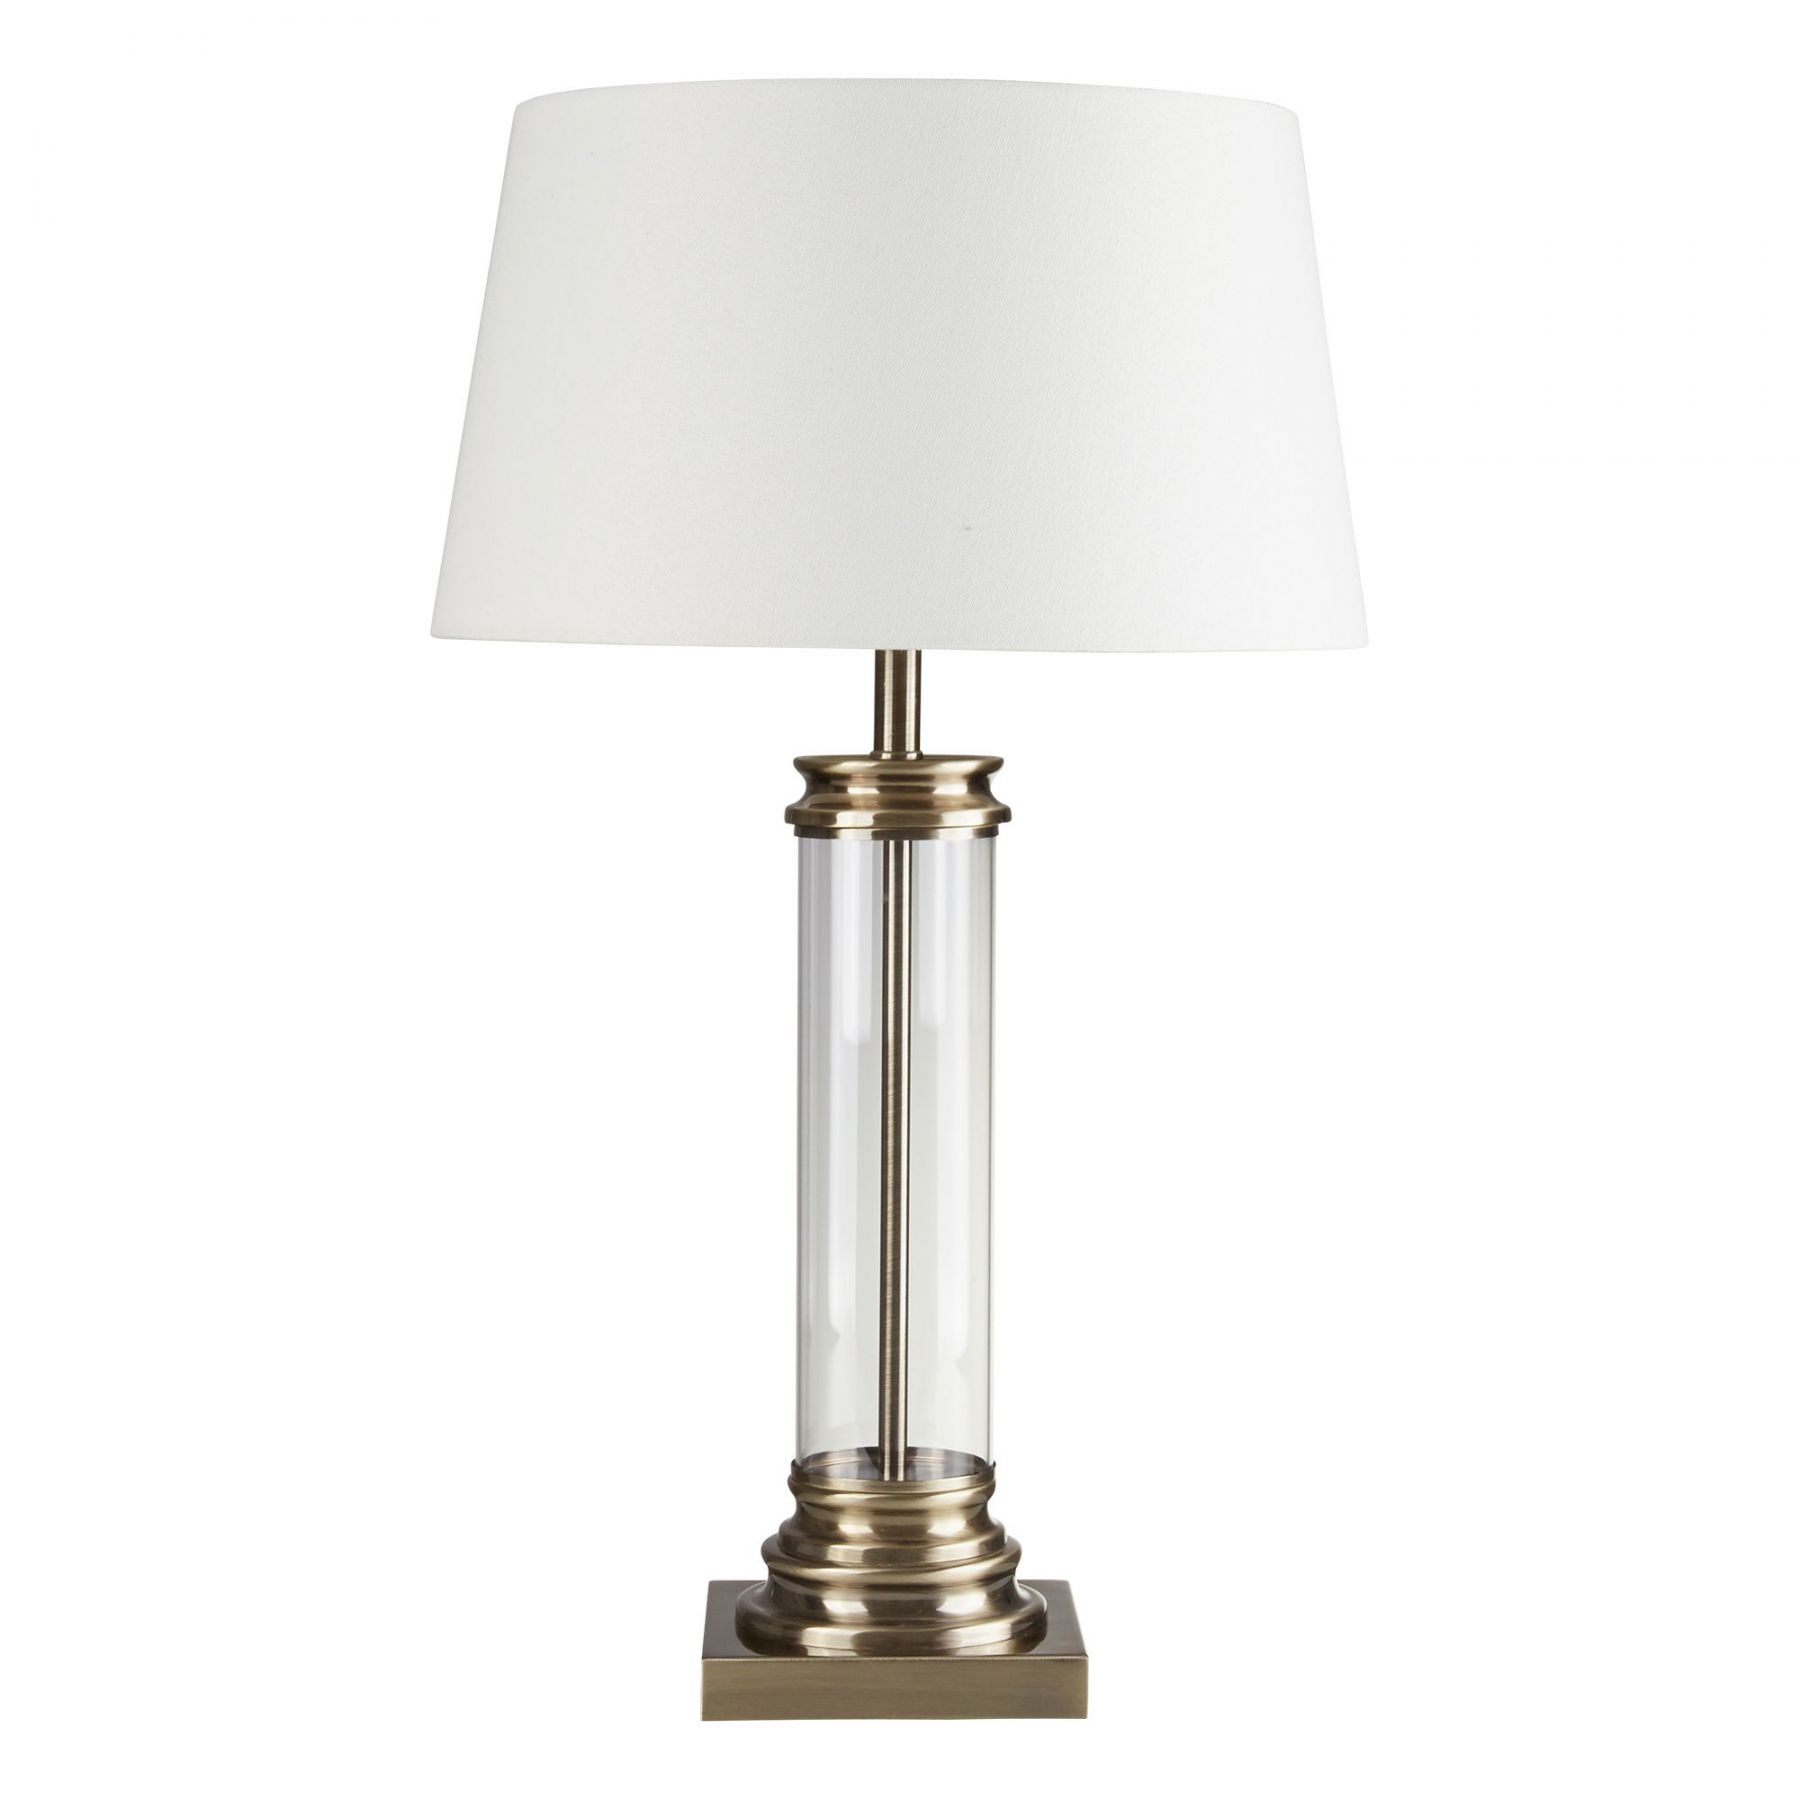 Kartell designové stolní lampy Bourgie - Osvětlení.com